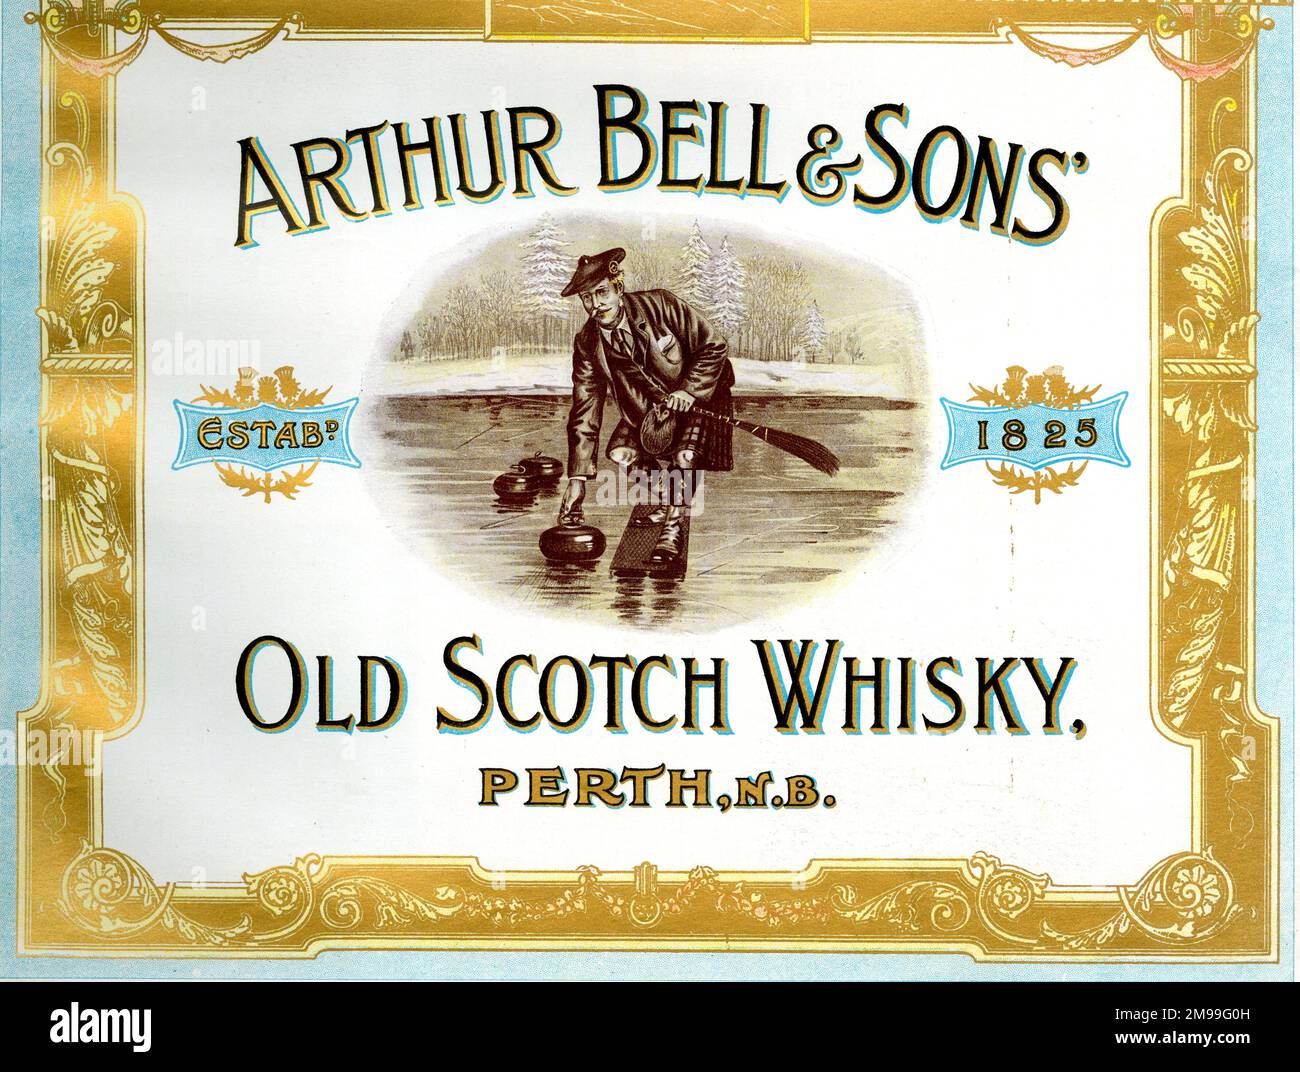 Werbung für Arthur Bell & Sons, Old Scotch Whisky, Perth, Schottland, mit Curling-Szene. Stockfoto